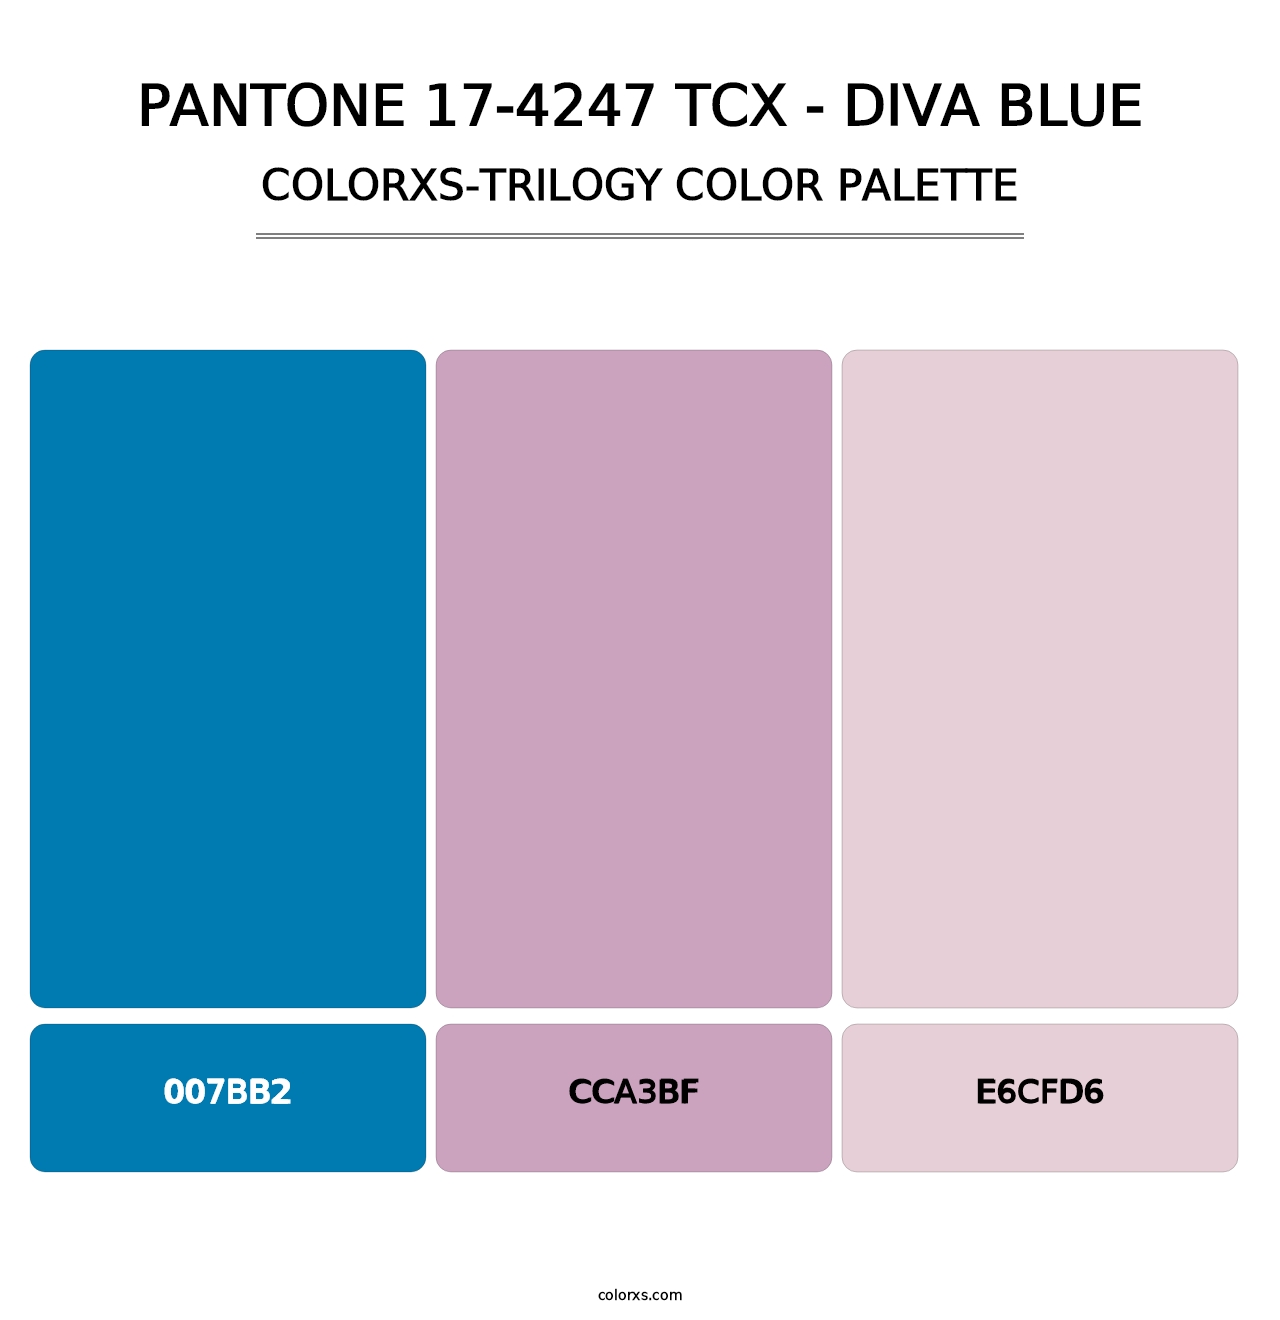 PANTONE 17-4247 TCX - Diva Blue - Colorxs Trilogy Palette